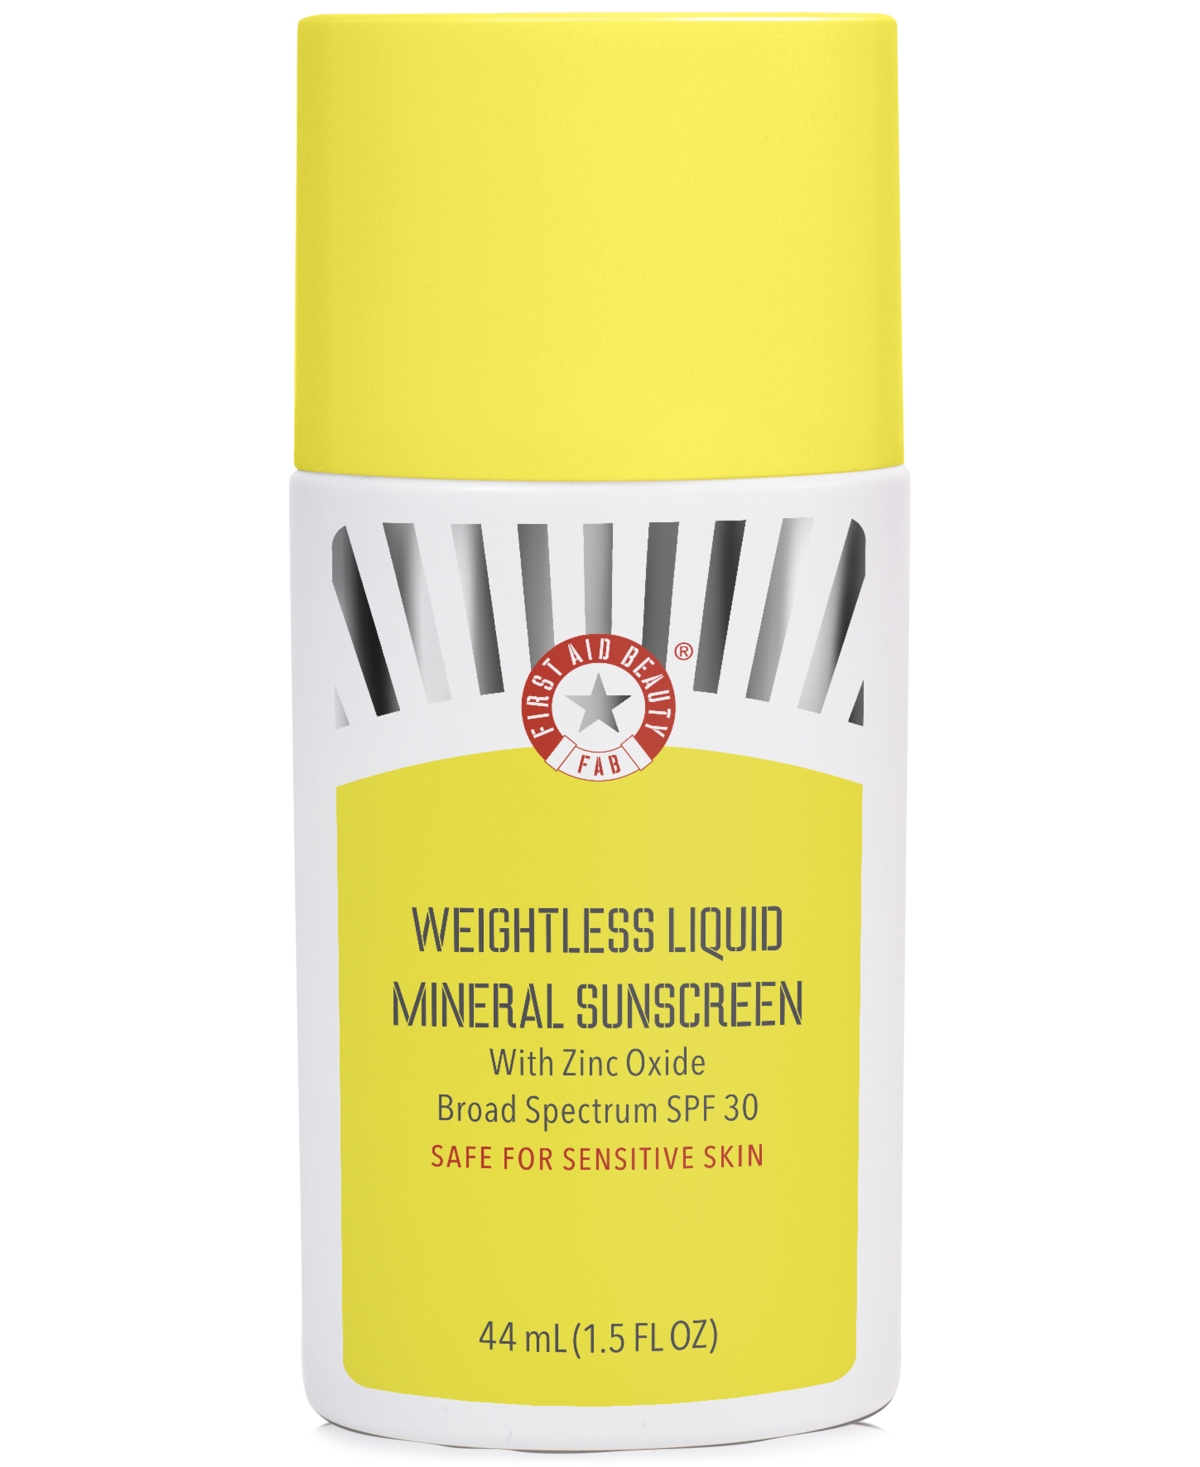 Weightless Liquid Mineral Sunscreen Spf 30, 1.5 oz.